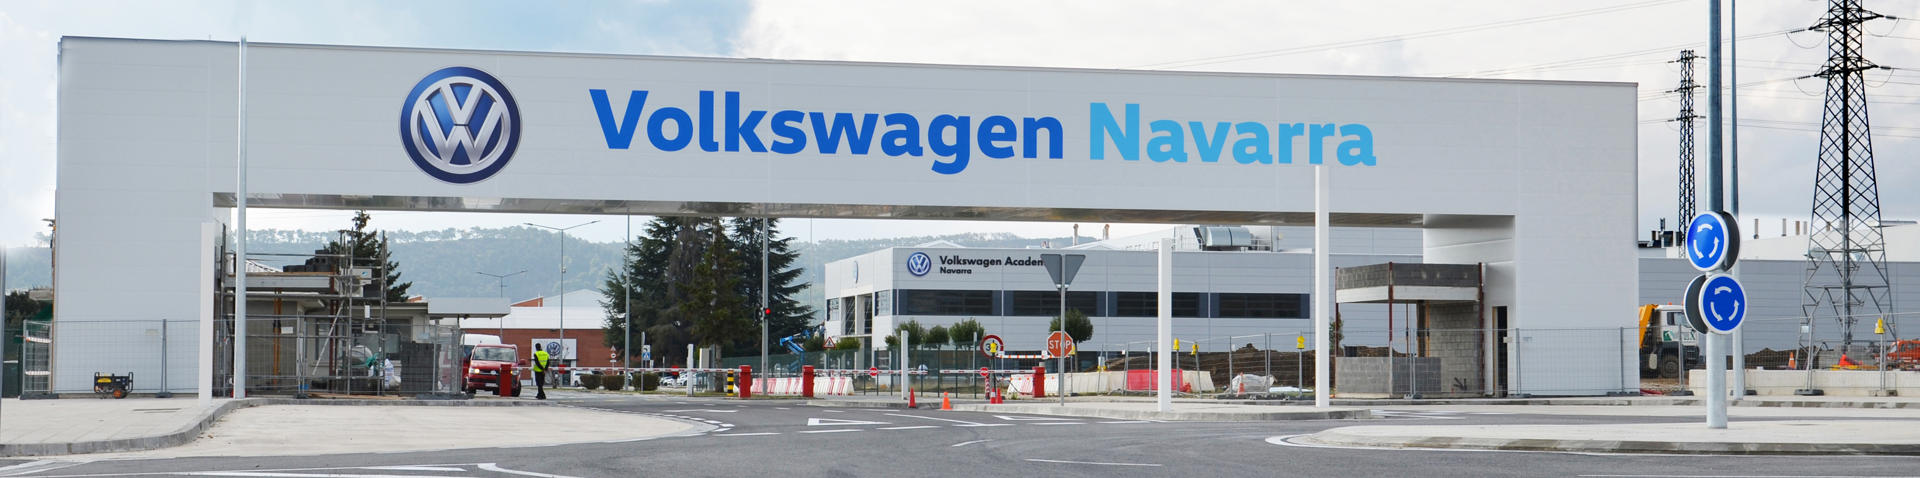 Duurzame ventilatietechnologie Volkswagen Navarra in Spanje